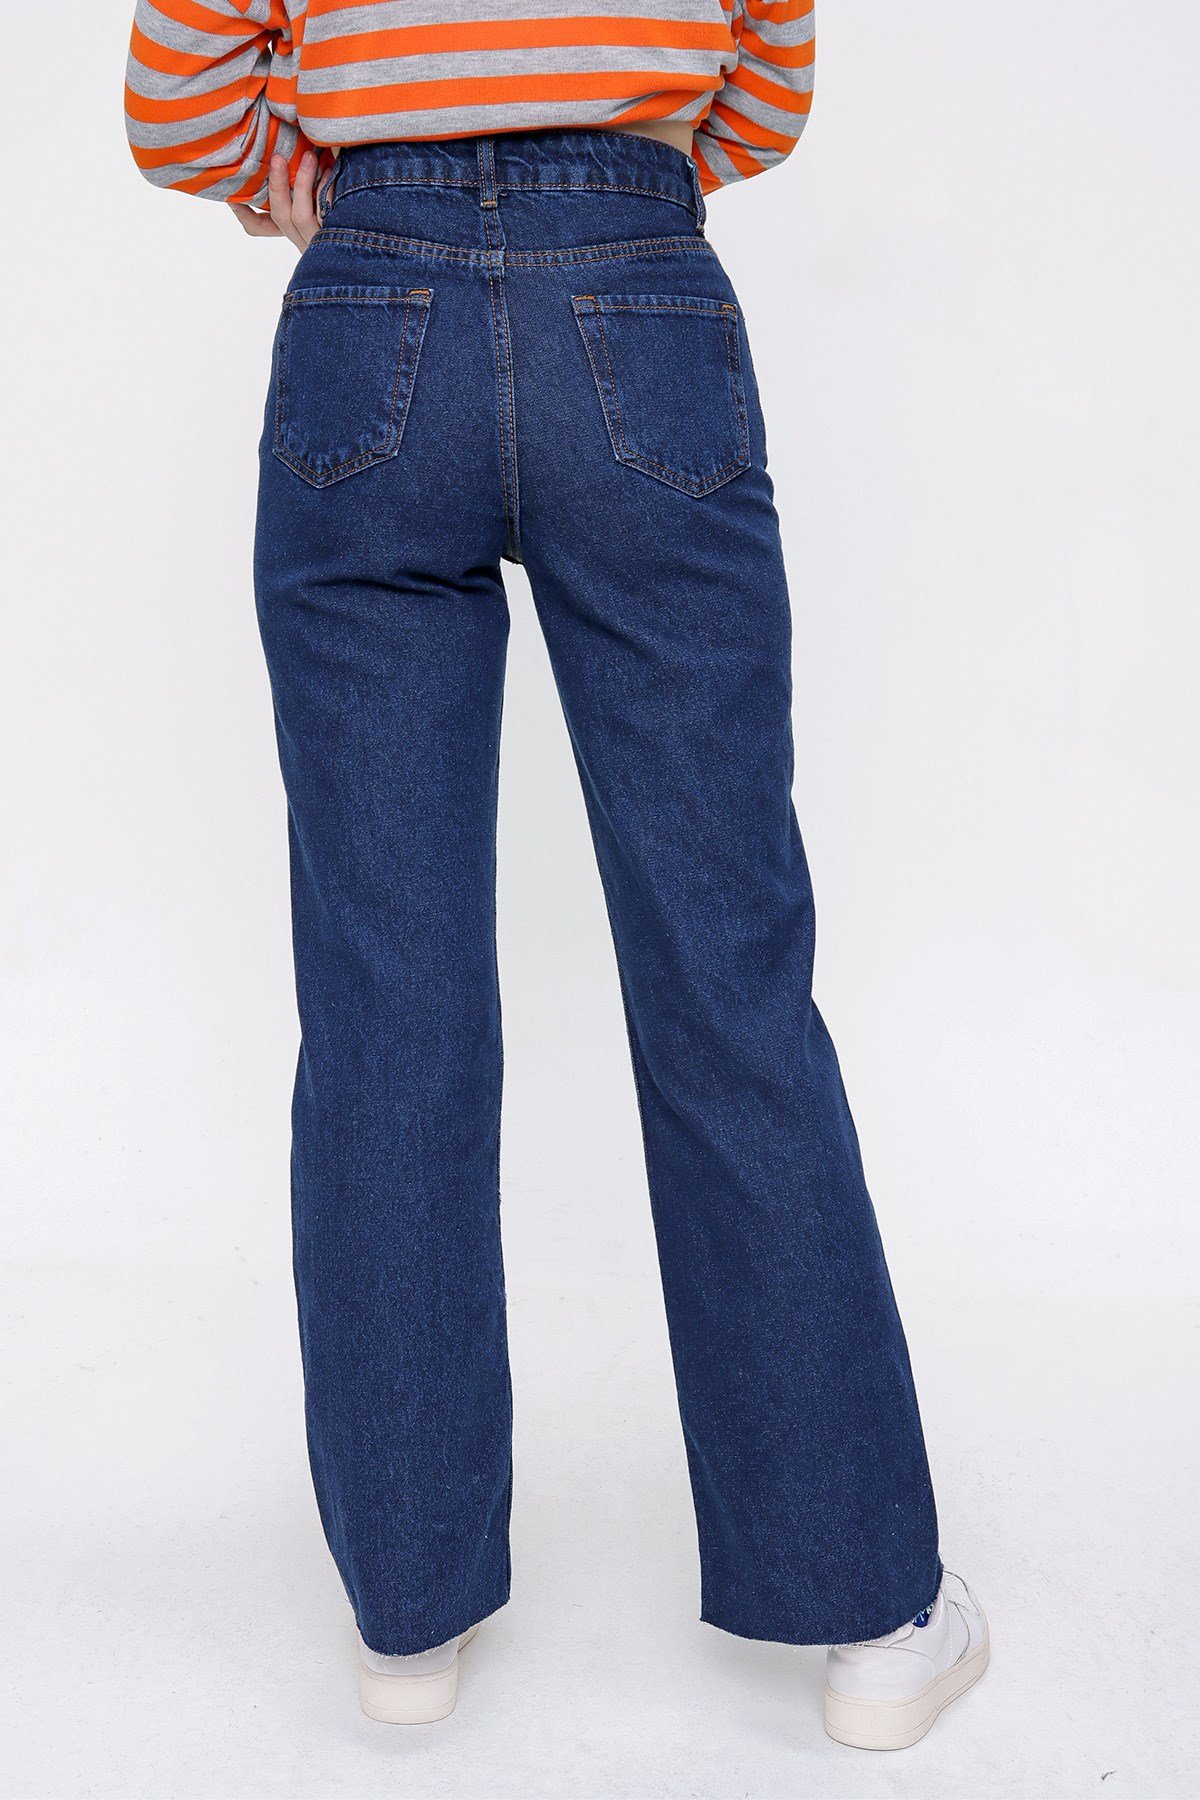 Kadın Koyu Mavi Kesik Bol Paça Pantolon - Butik Buruç